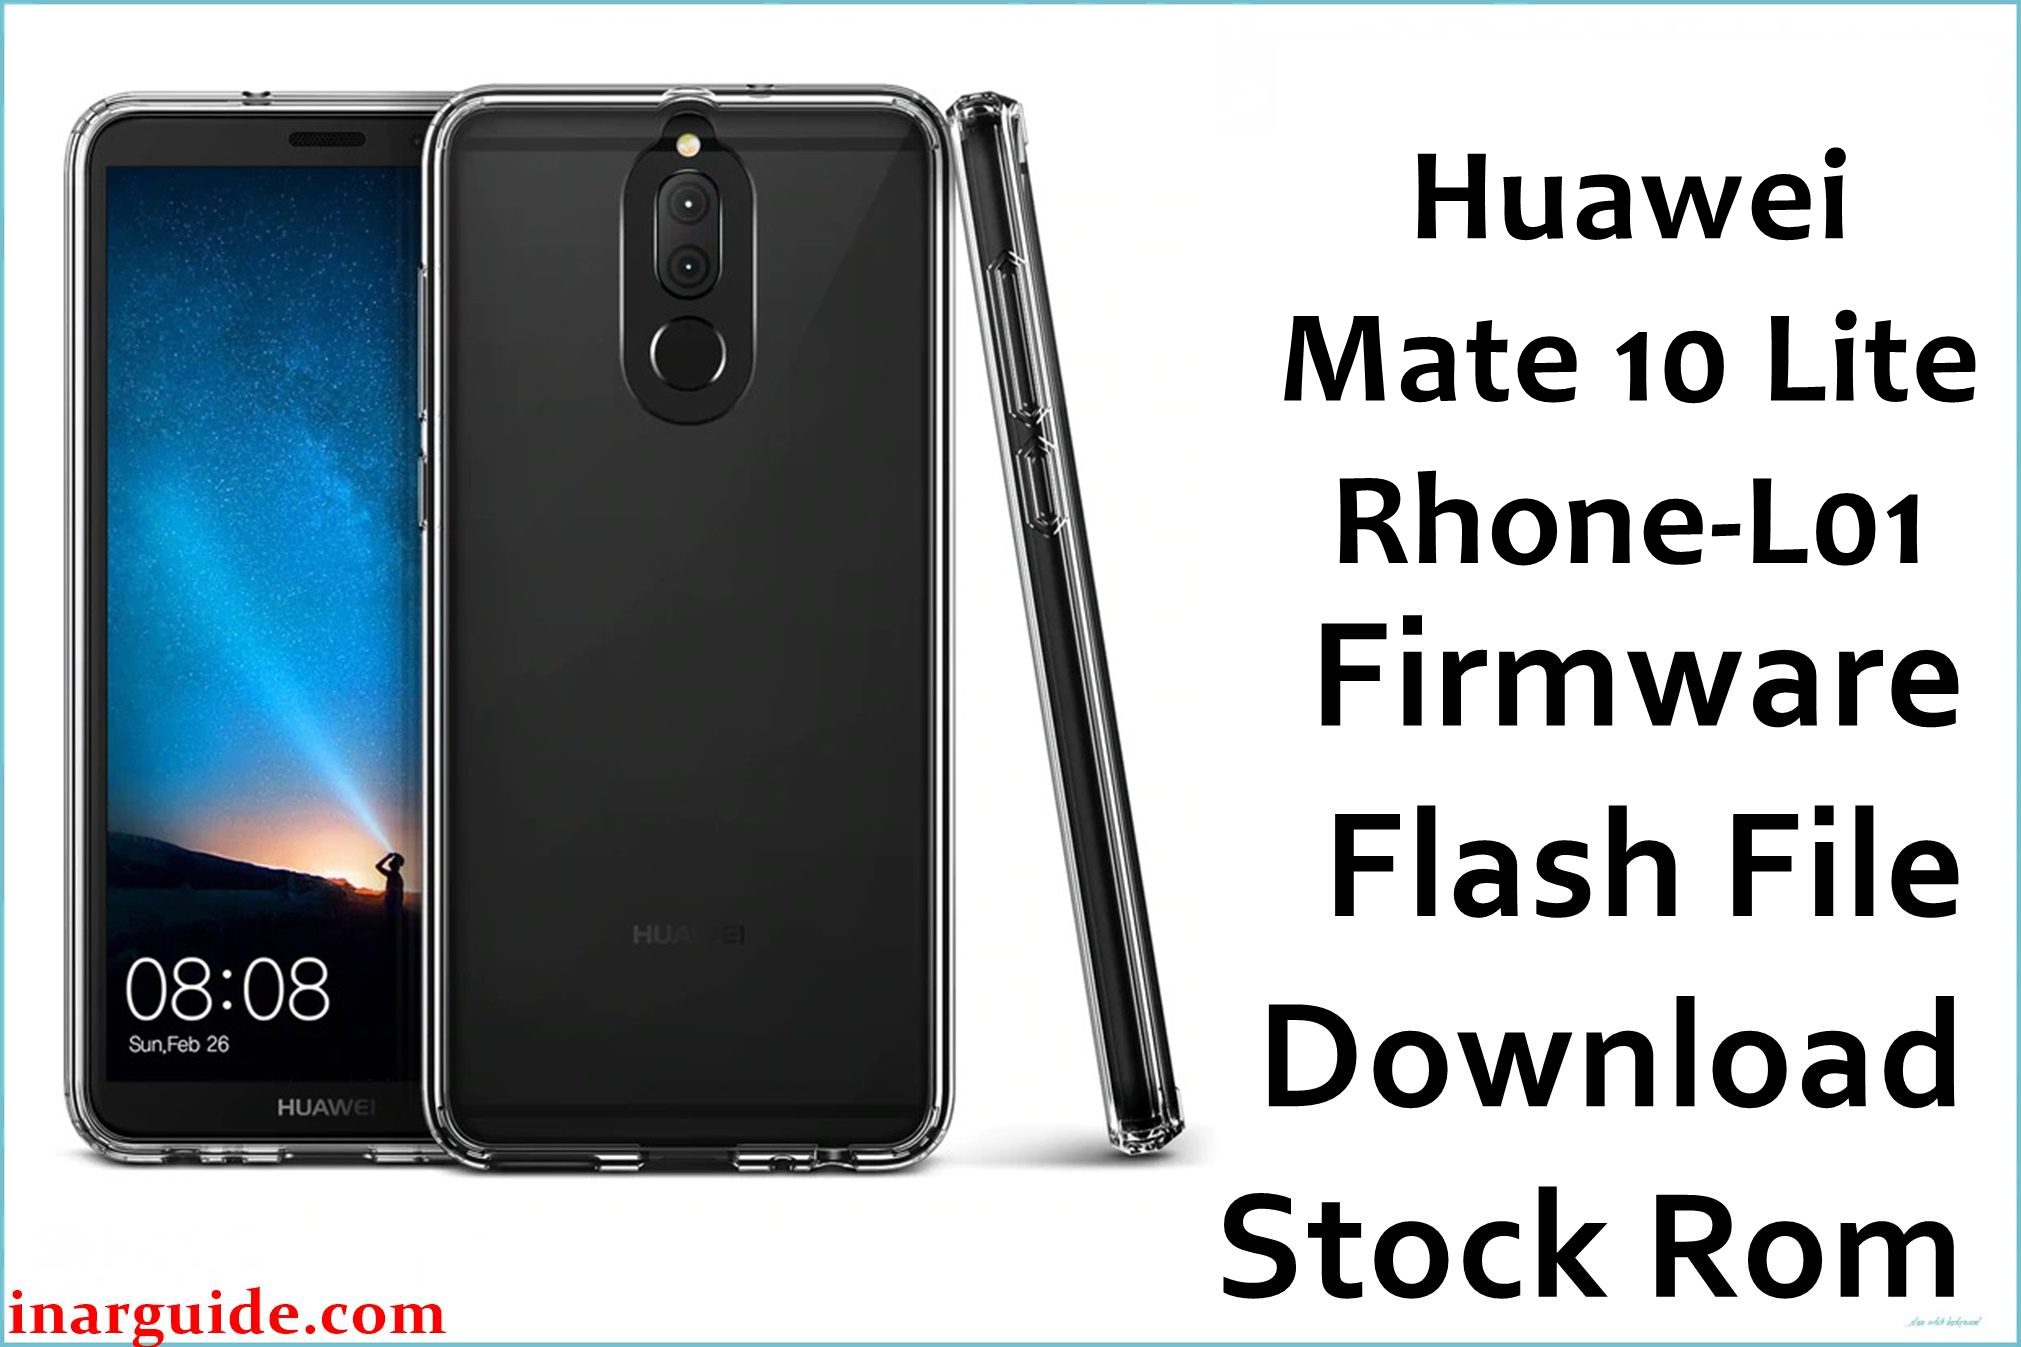 Huawei Mate 10 Lite Rhone L01